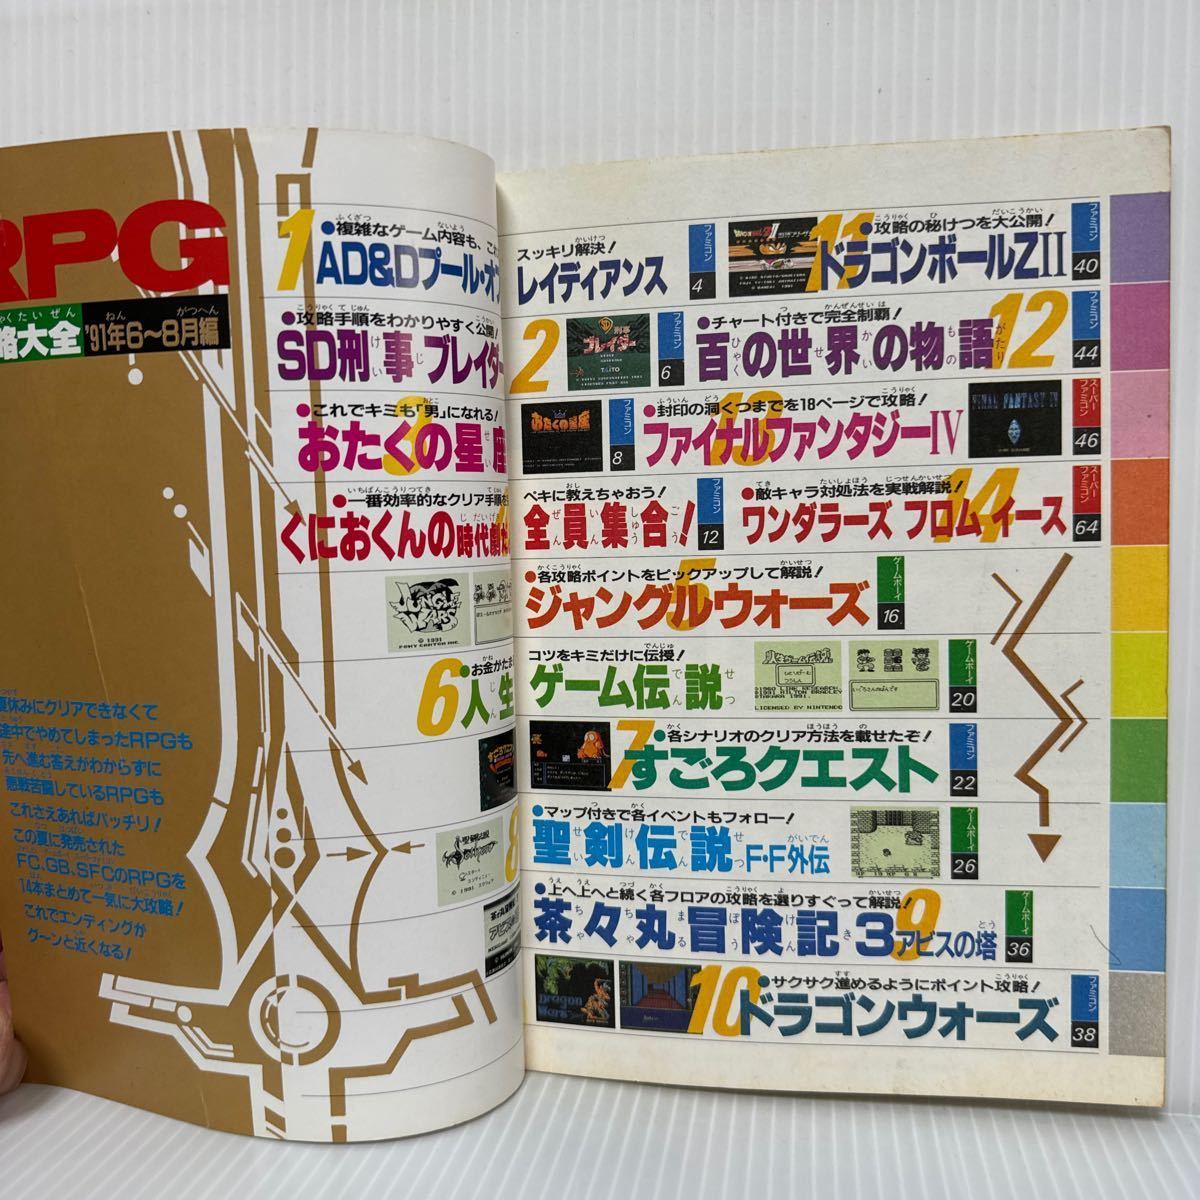 ファミリーコンピューターMagazine RPG攻略大全'91/6〜8月編 1991/10/4号特別付録★ファミコン/ゲームボーイ/スーパーファミコン_画像2